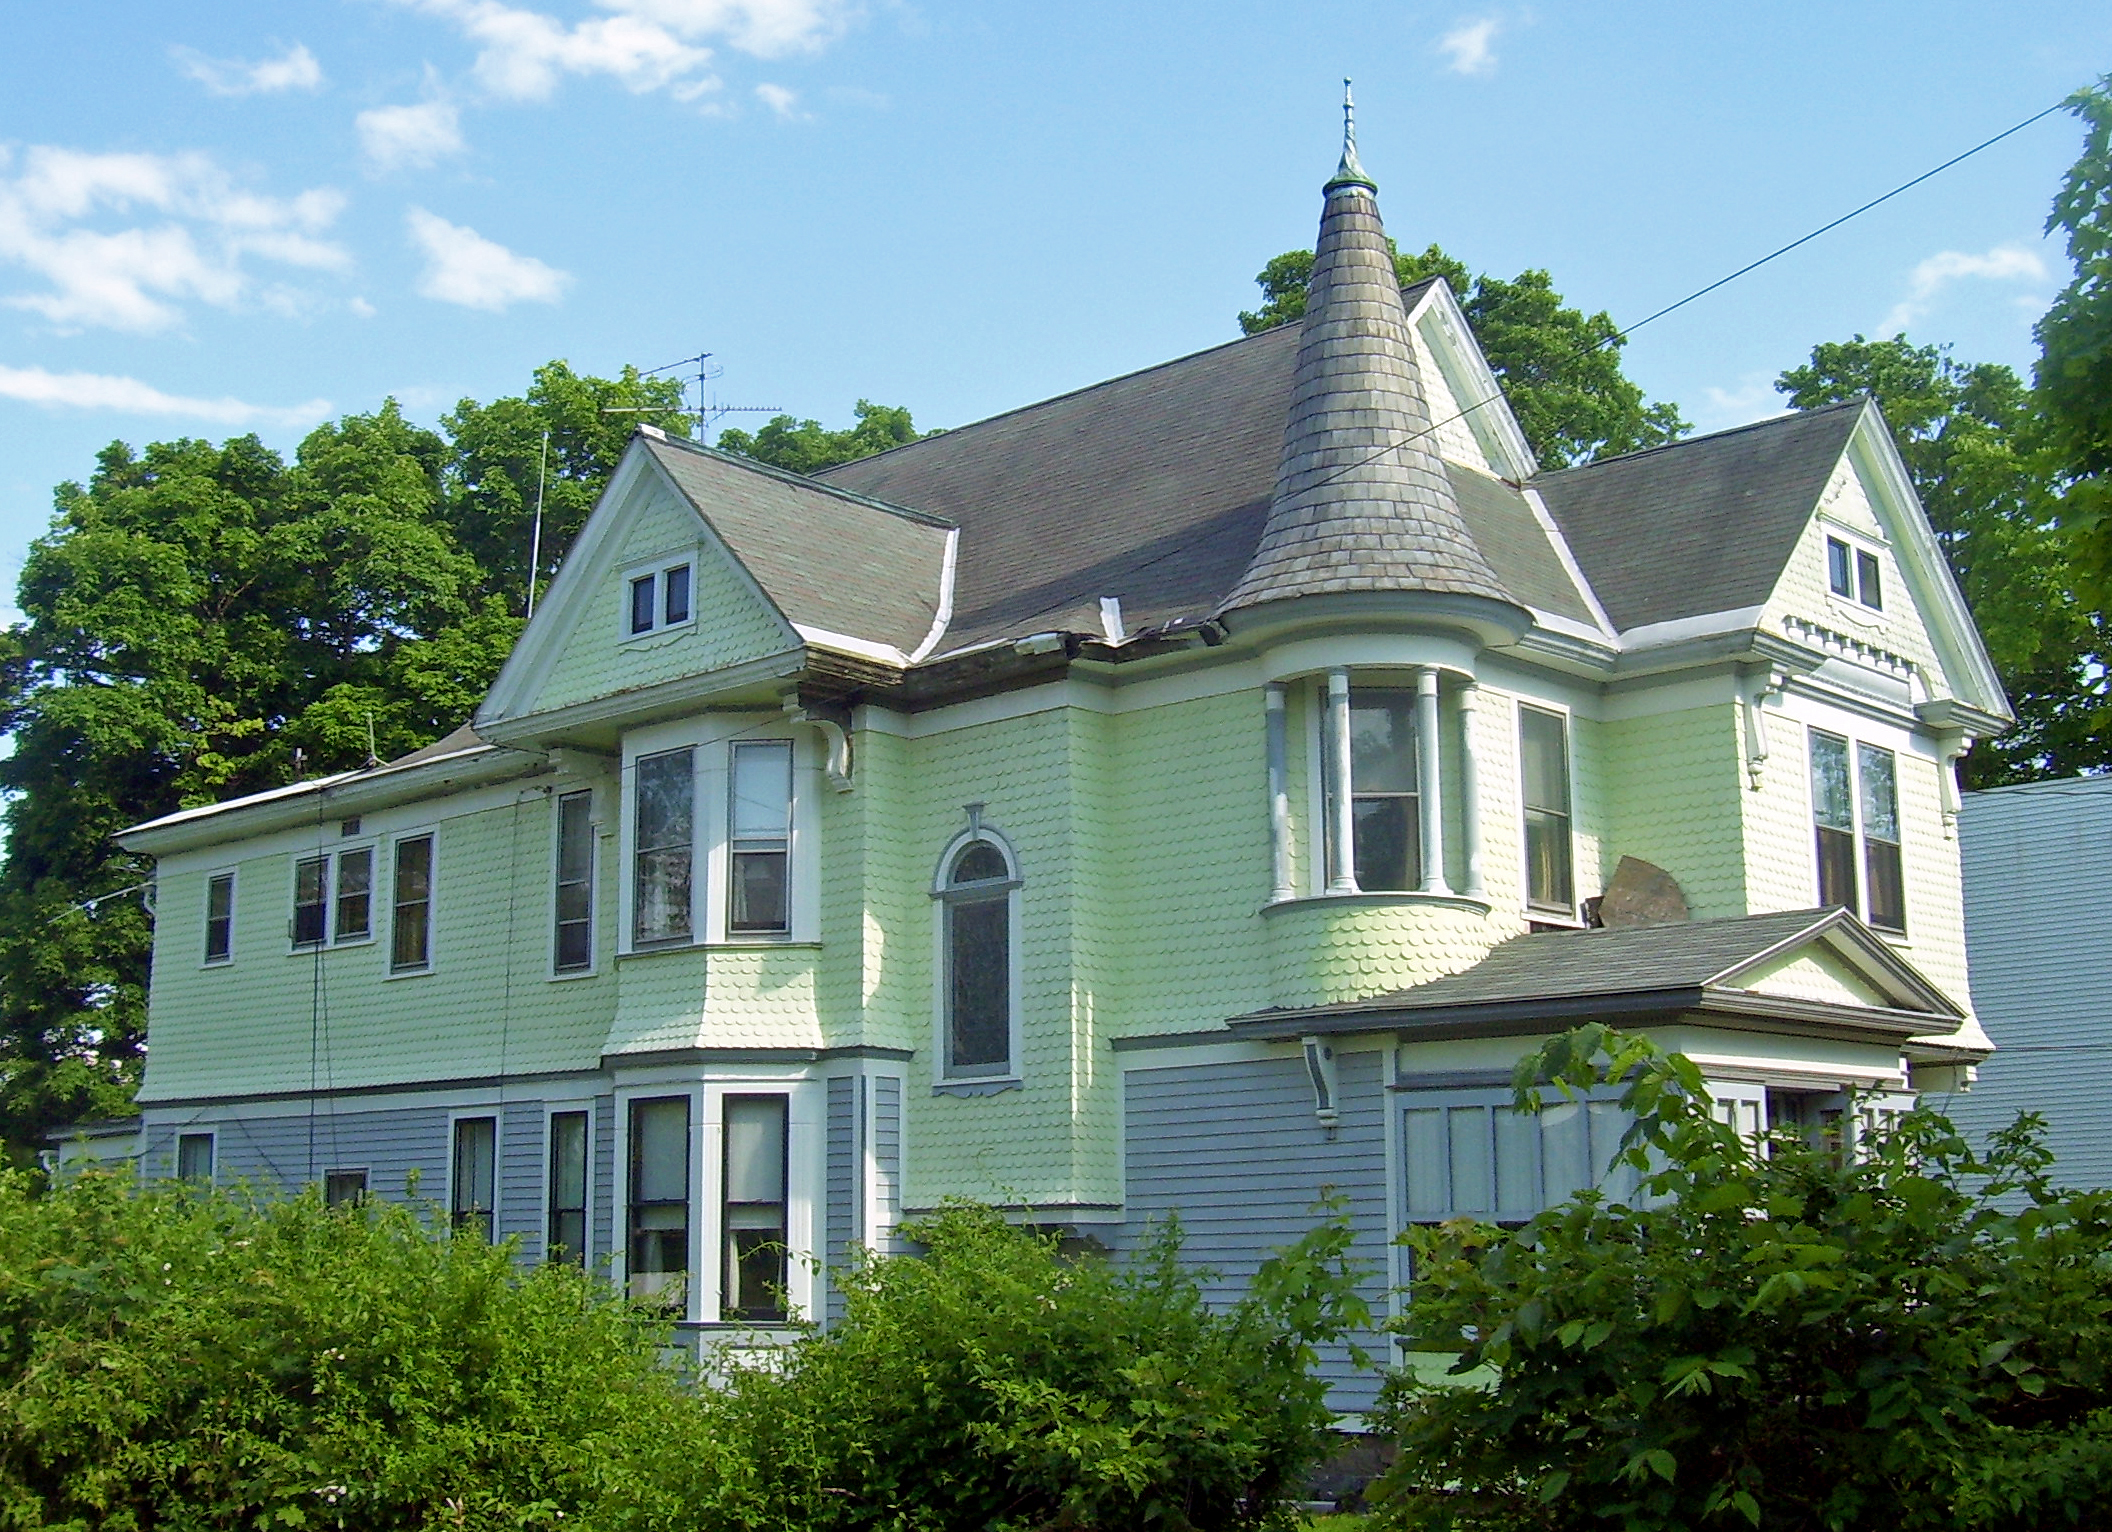 File:Leonard Lackman House, Cohoes, NY.jpg - Wikimedia Commons